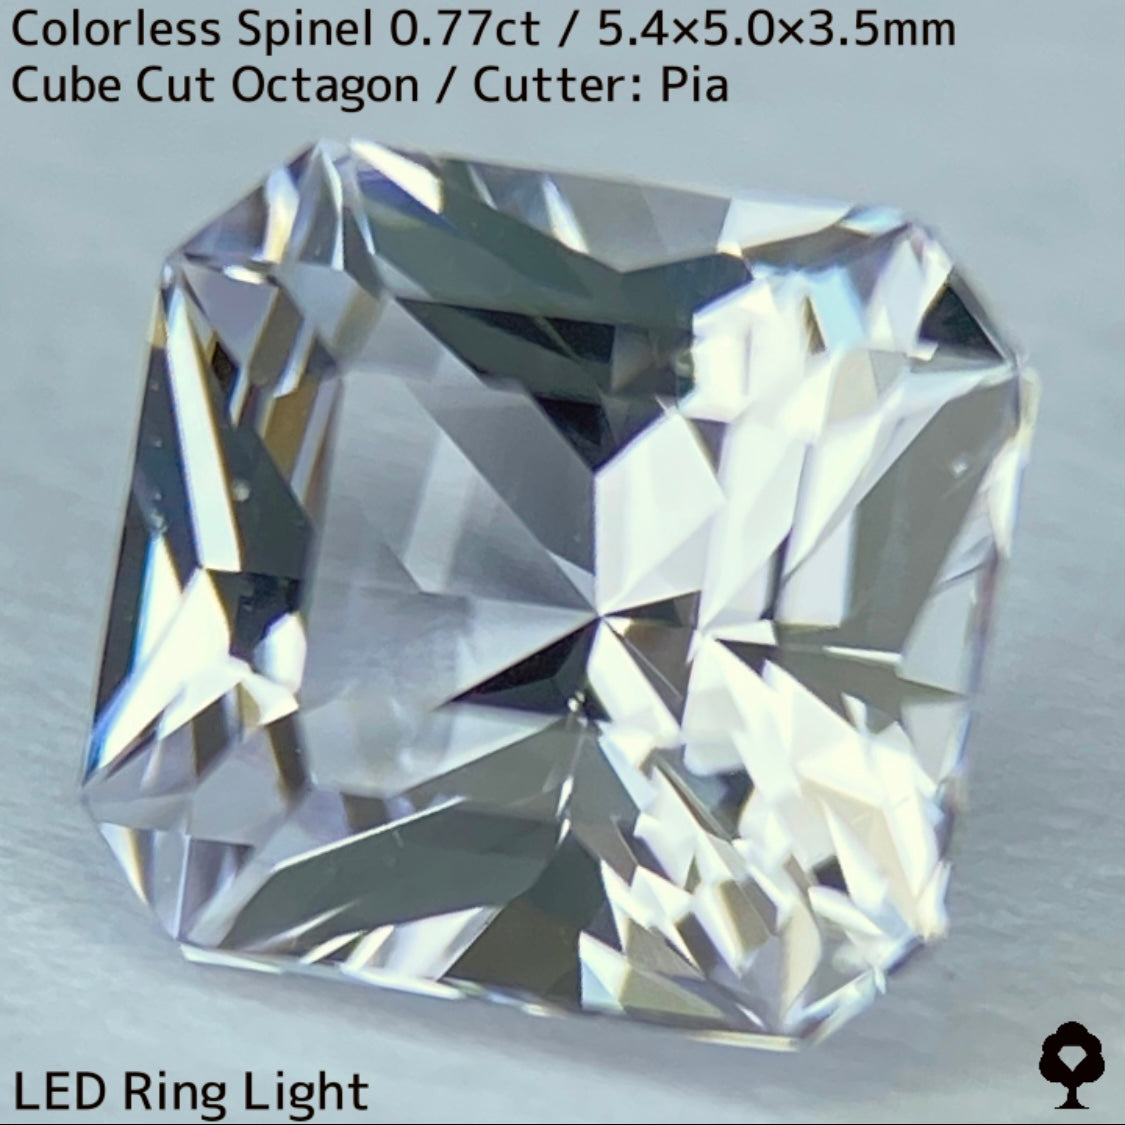 カラーレススピネル0.772ct★ダイヤ顔負けの強烈な煌めき放つレアカラーレス美結晶